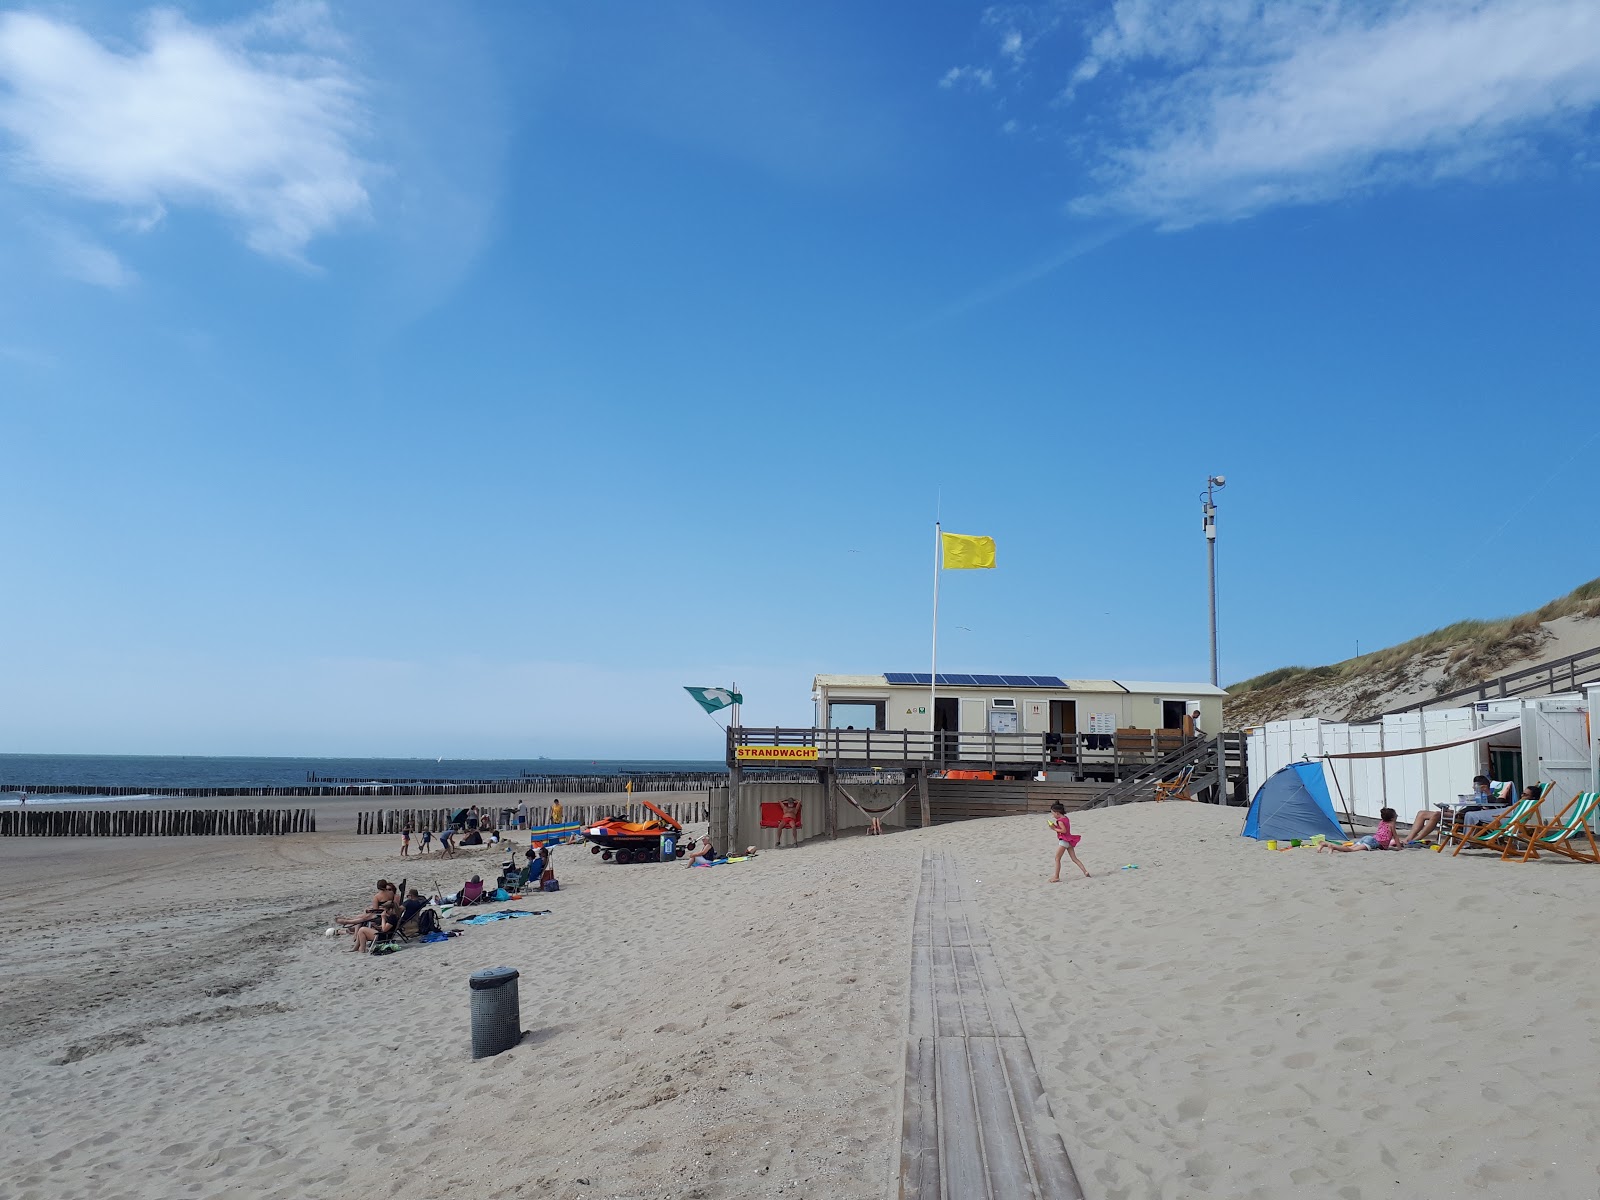 Zdjęcie Joossesweg beach - popularne miejsce wśród znawców relaksu